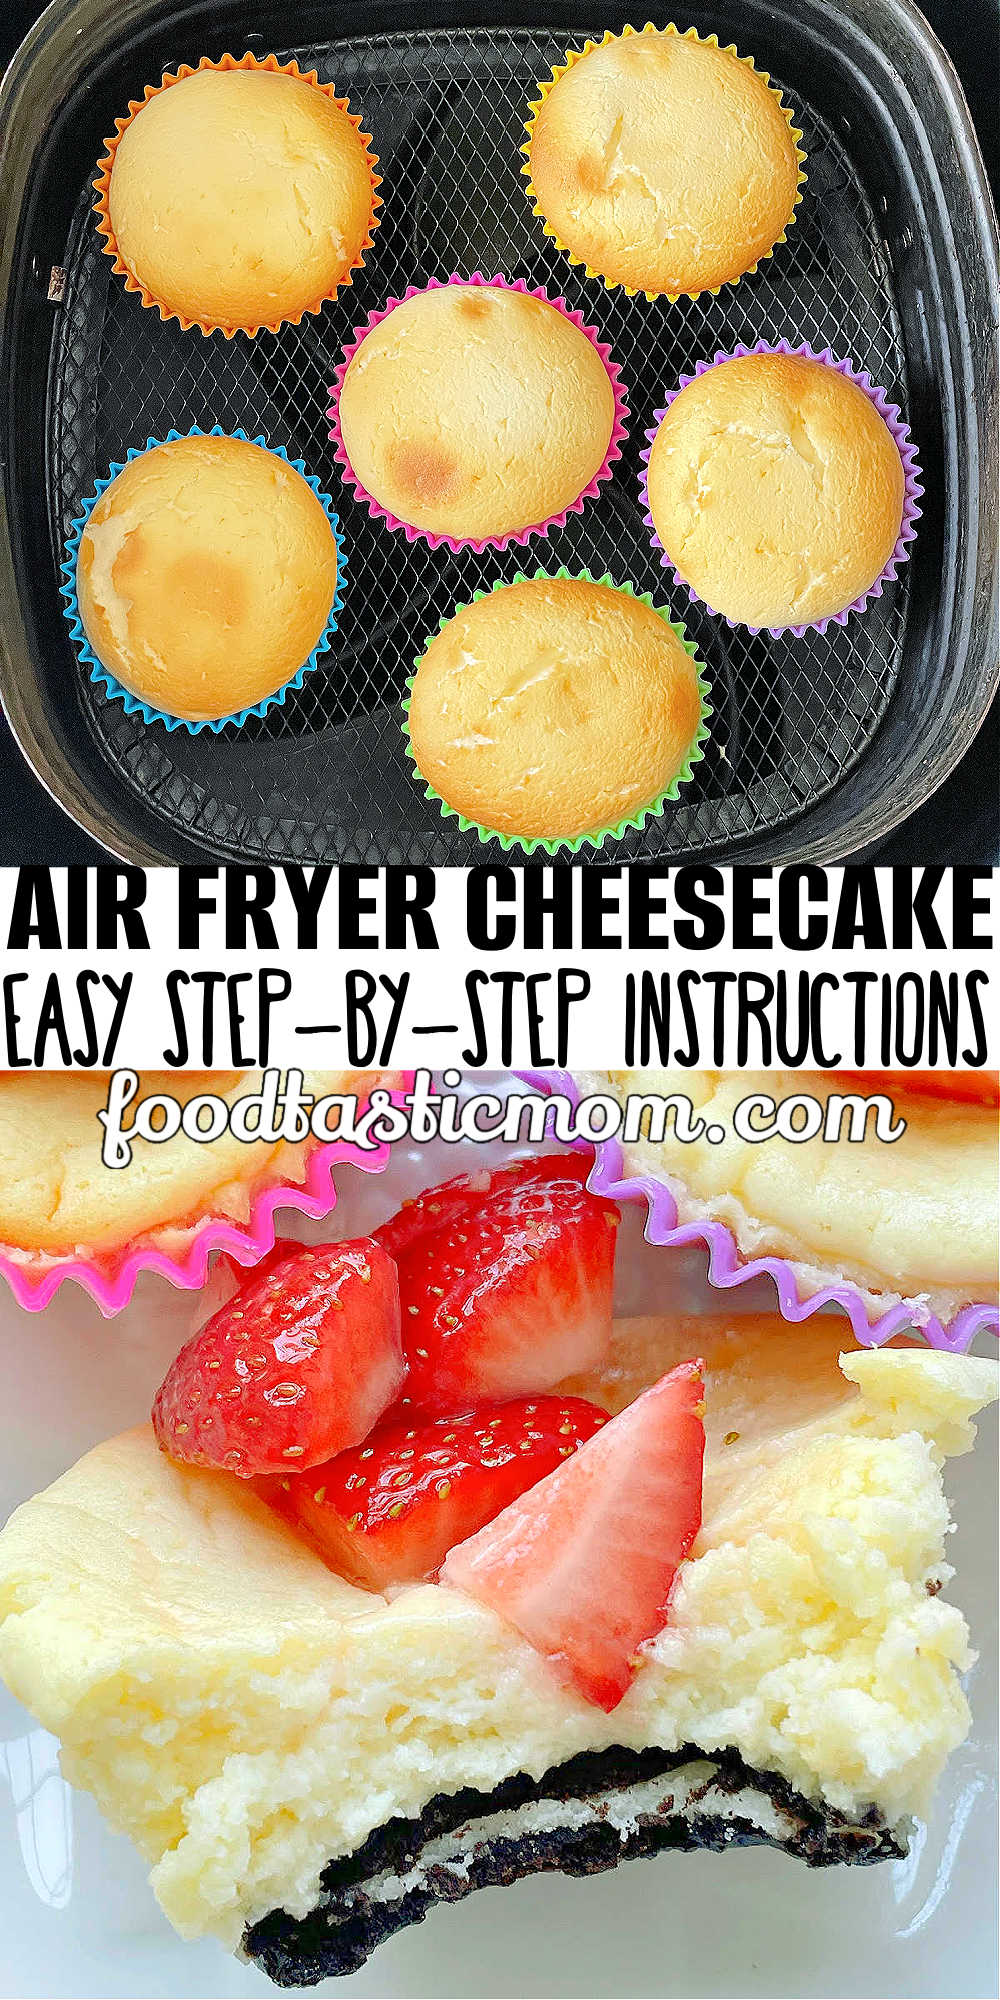 Air Fryer Cheesecake | Foodtastic Mom #airfryerrecipes #cheesecakerecipes #minicheesecakes #airfryercheesecake via @foodtasticmom